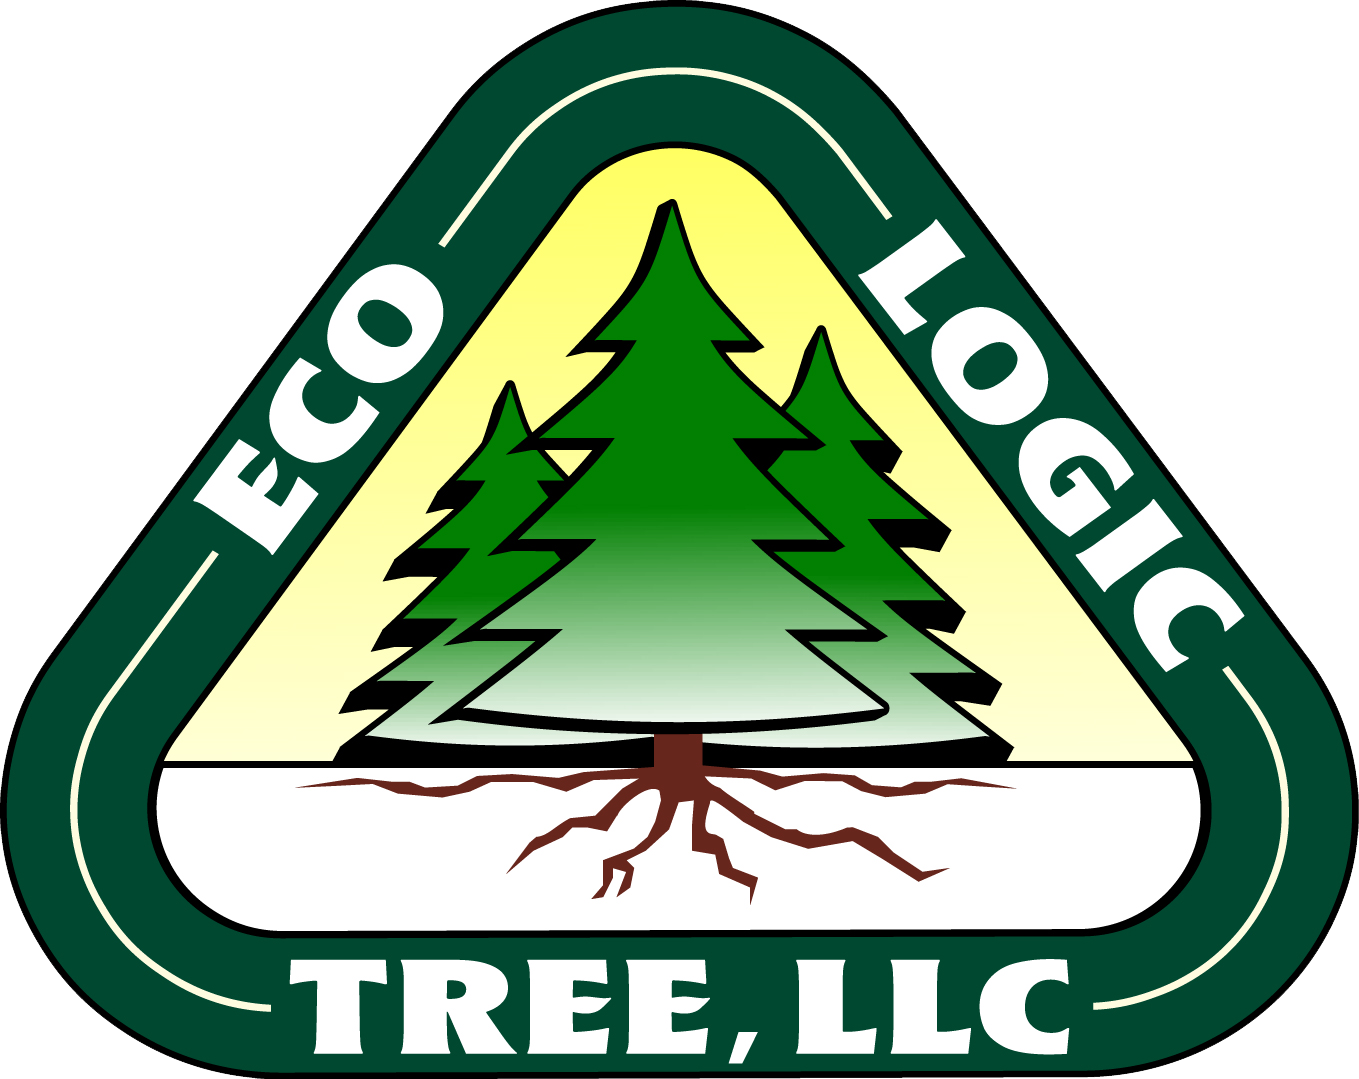 Ecologic Tree